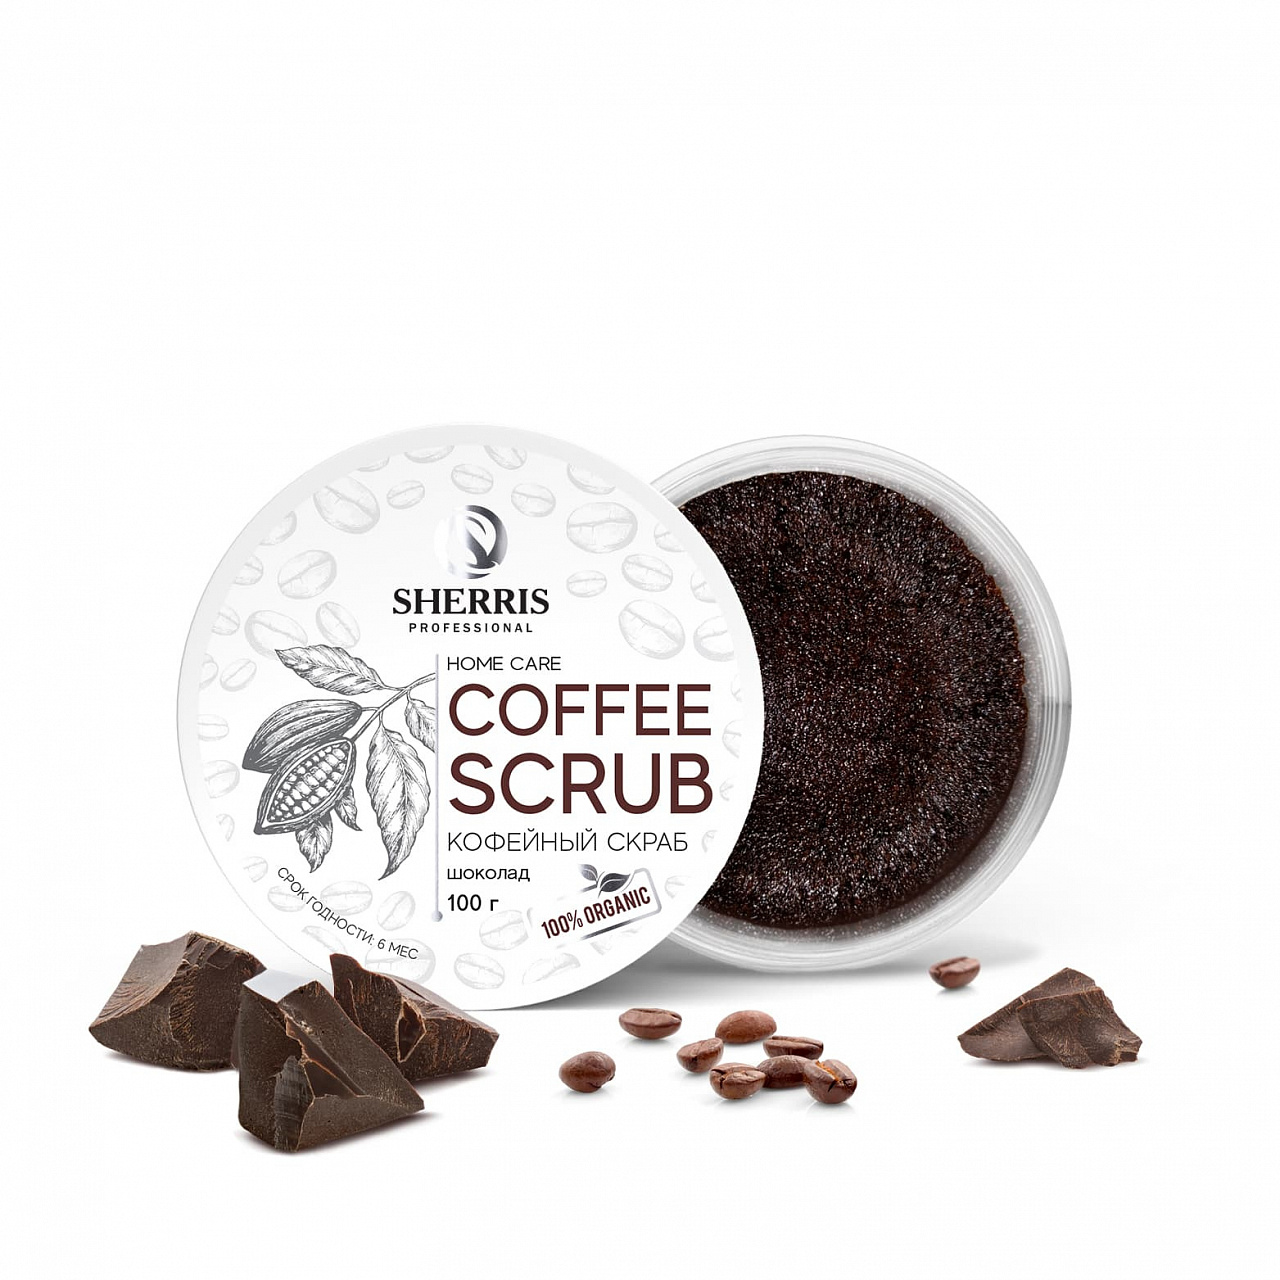 Кофейный скраб для тела SHERRIS шоколад, 100 гр roko антицеллюлитный скраб для тела кофе и шоколад с цитрусом 250